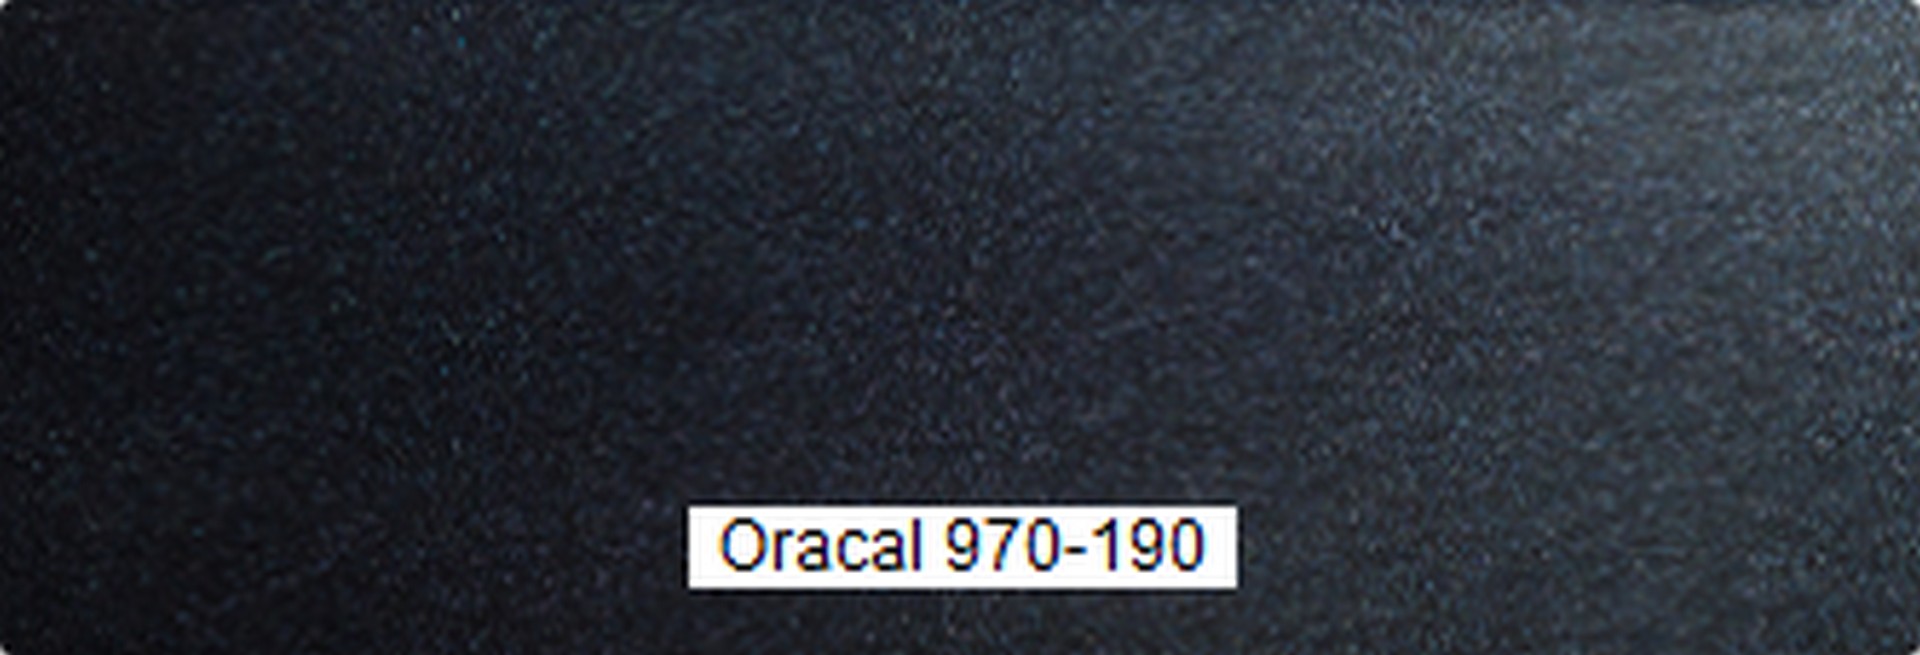 oracal 970-190